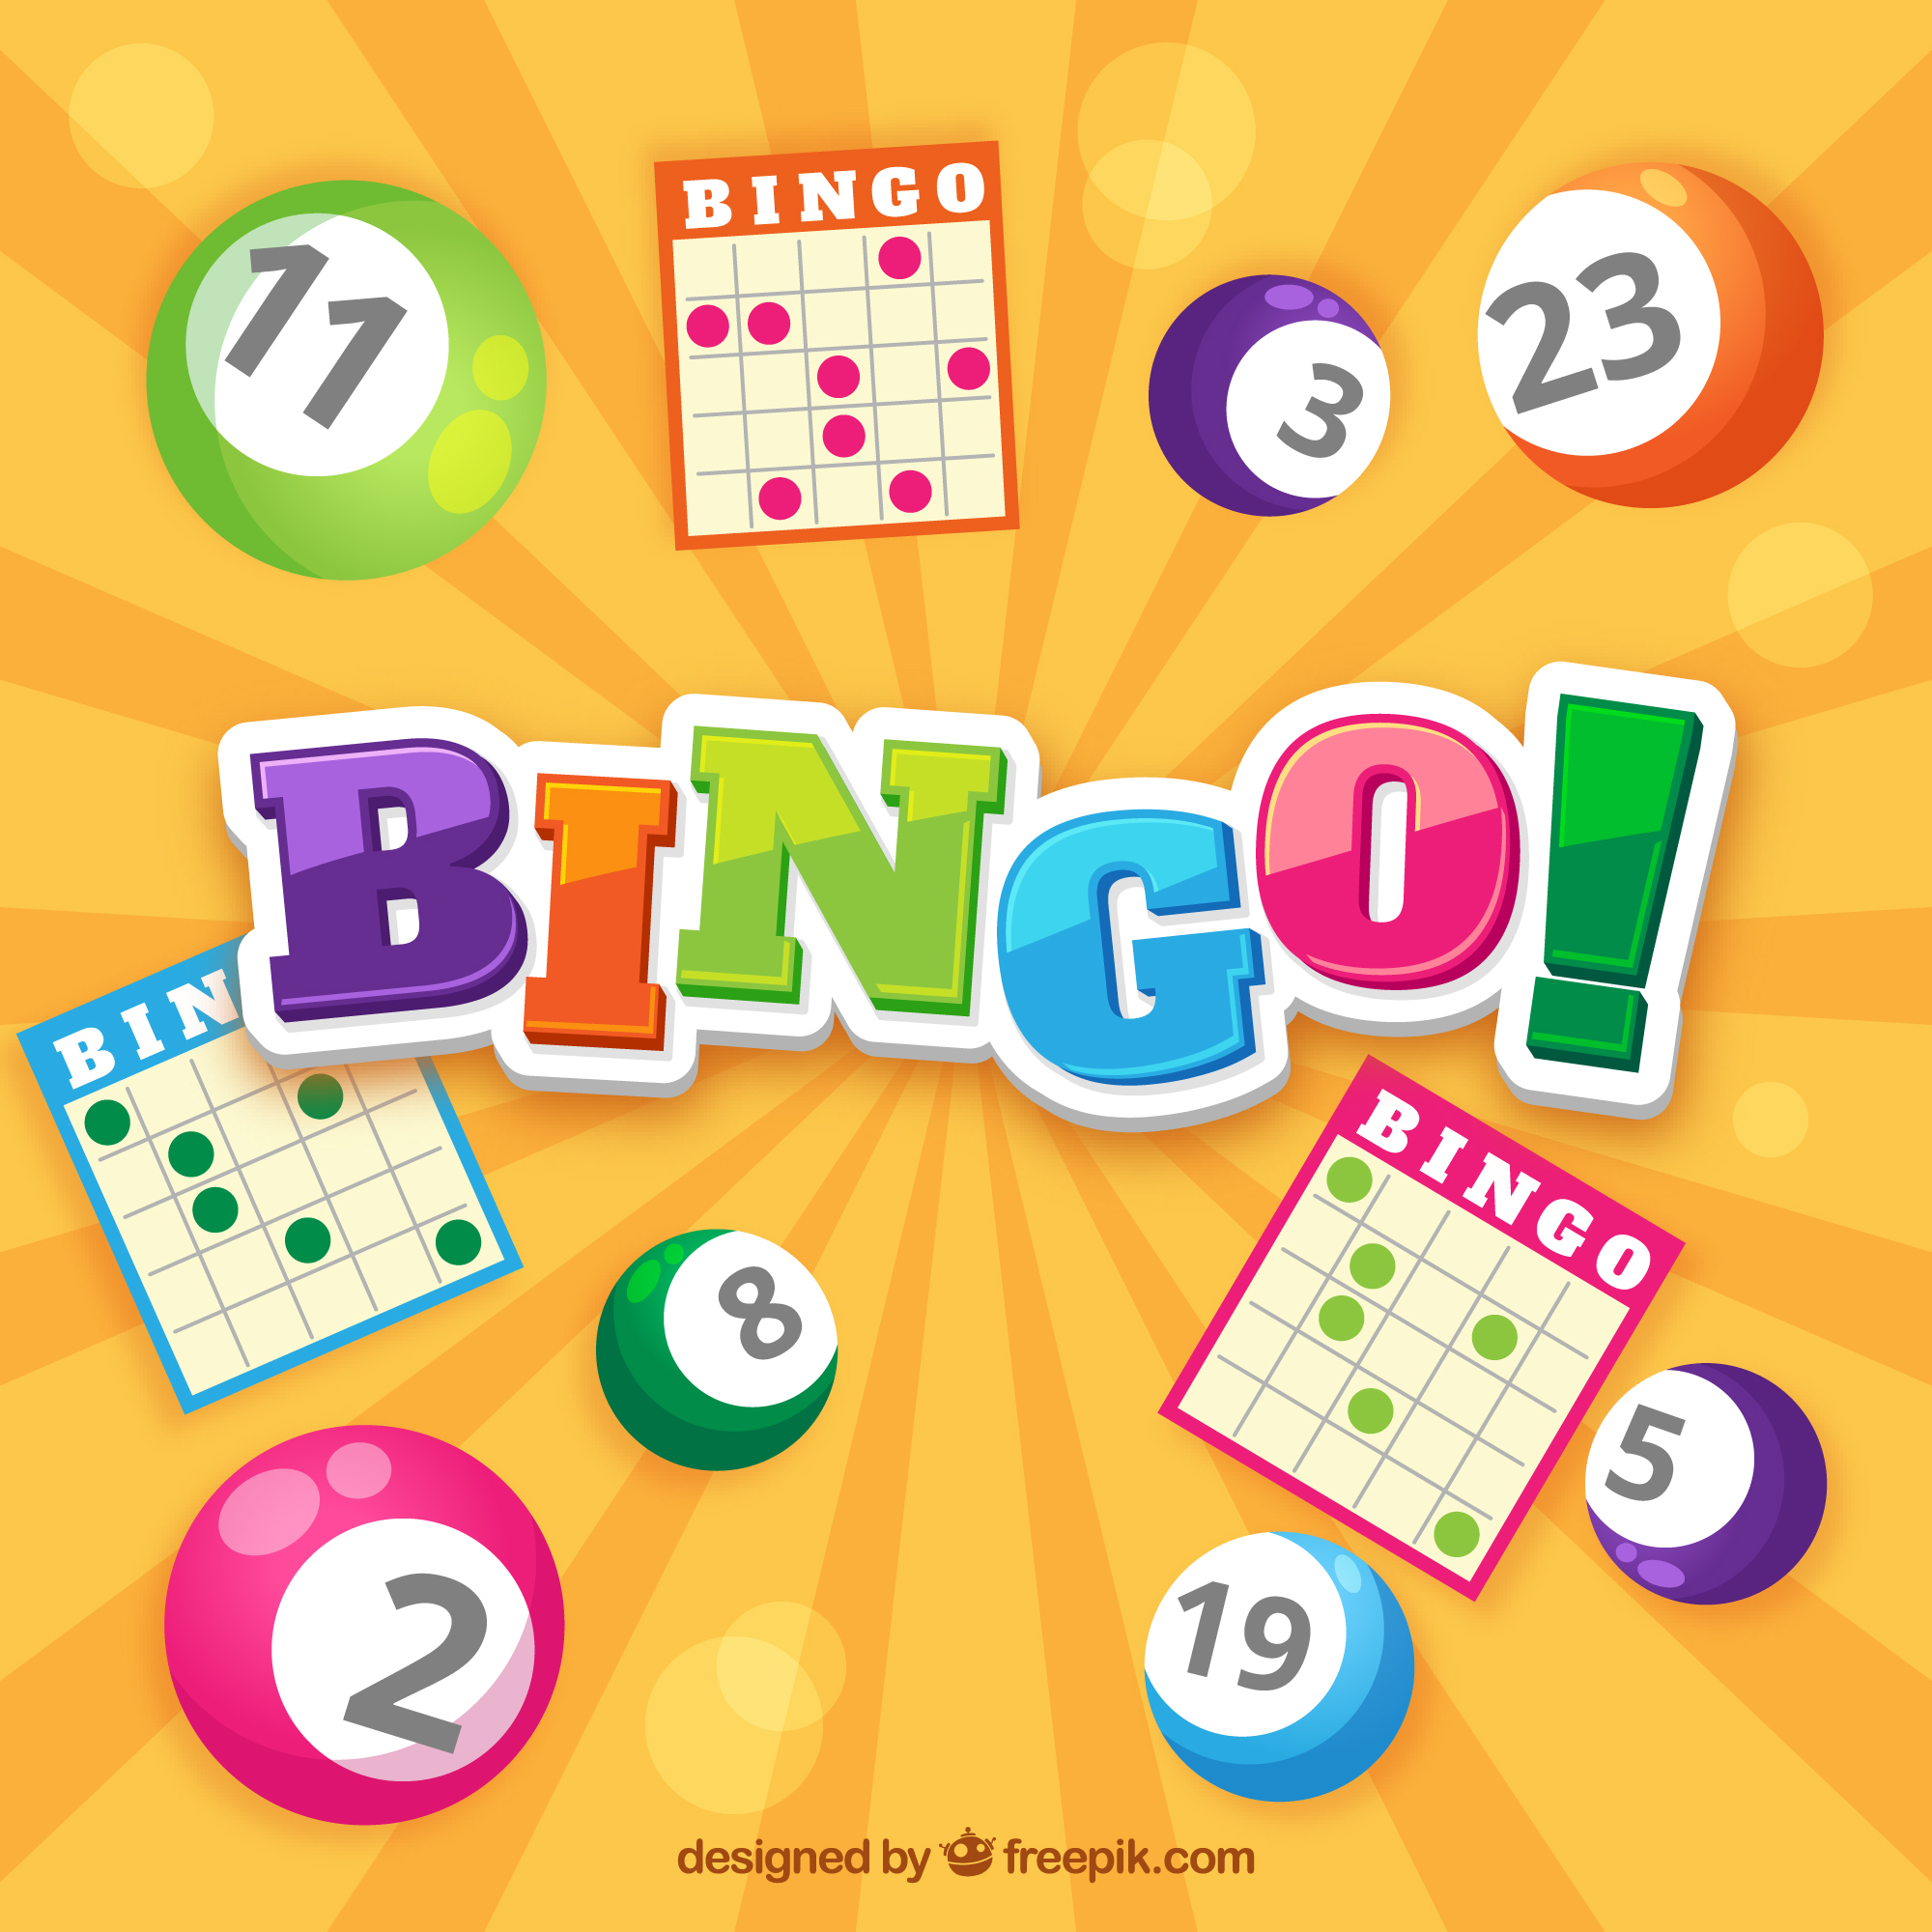 Qué beneficia tiene el bingo